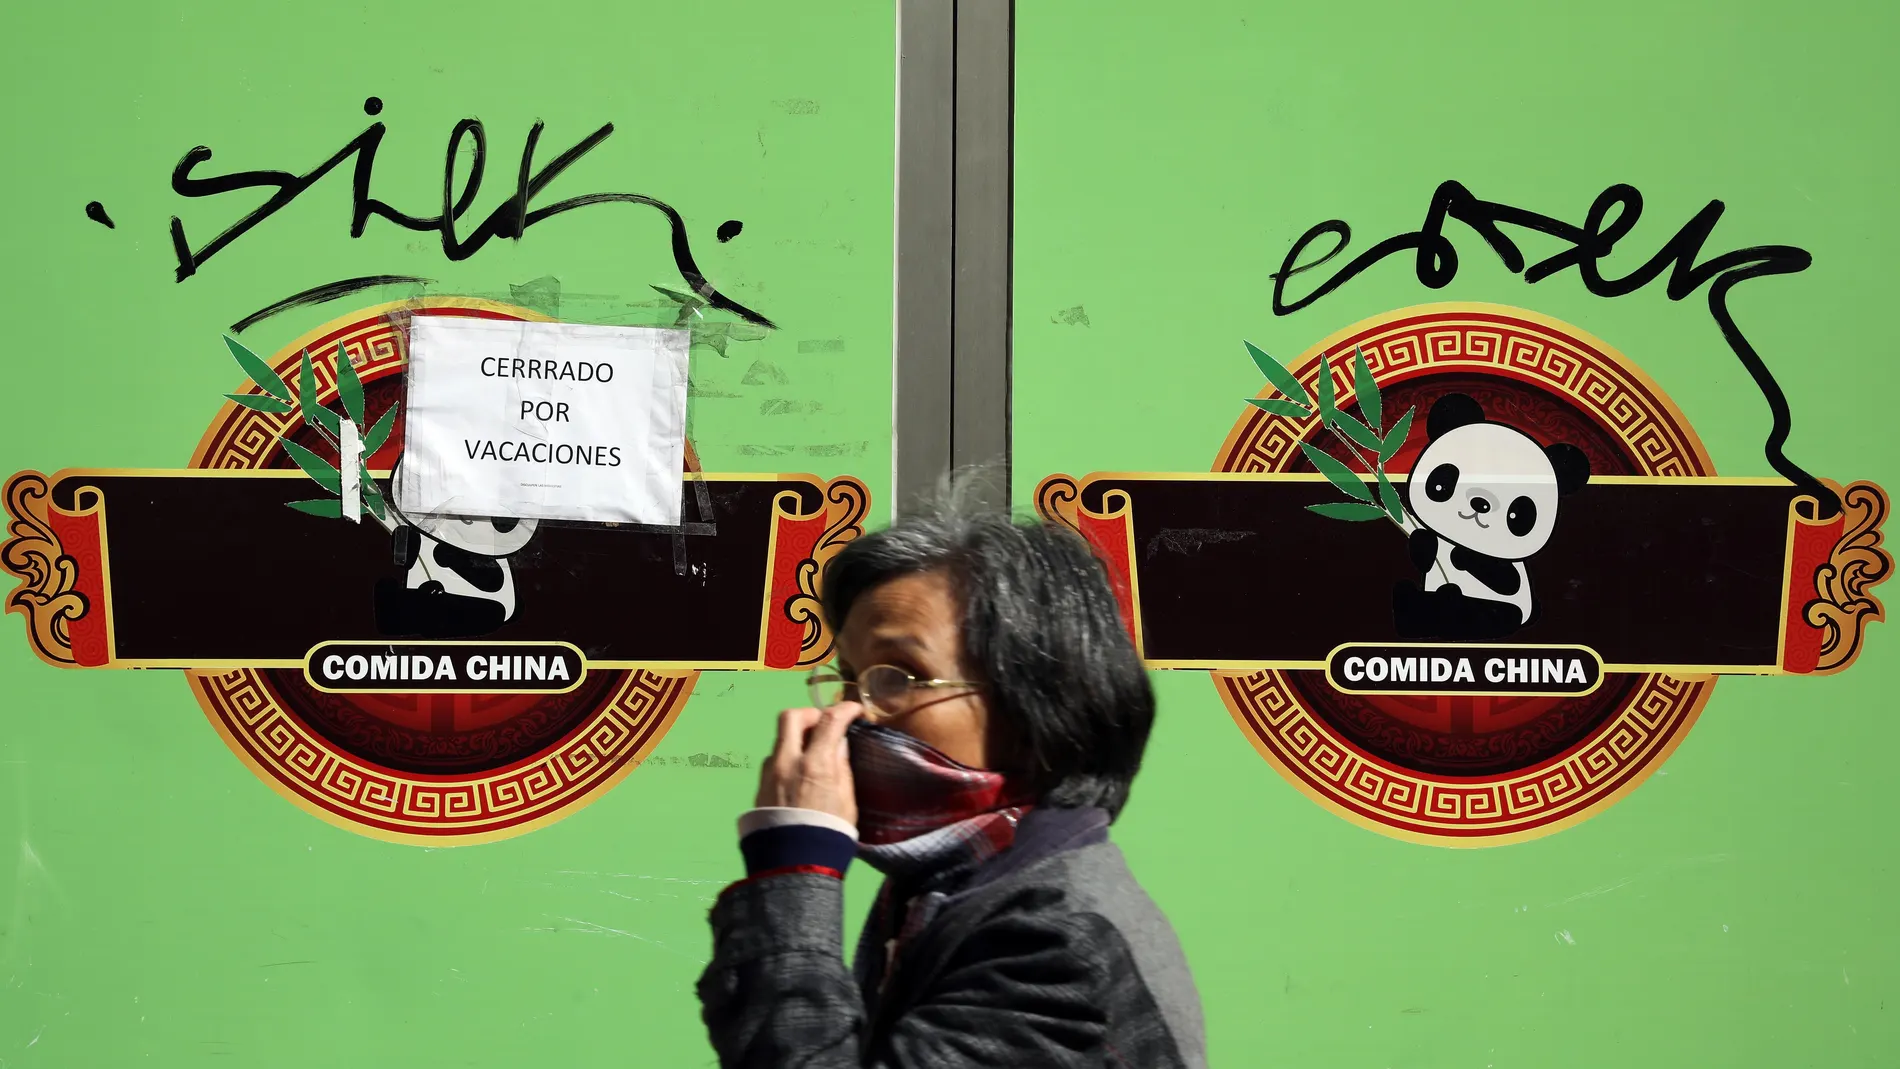 El barrio más chino de València lucha contra el "Cerrado por vacaciones"